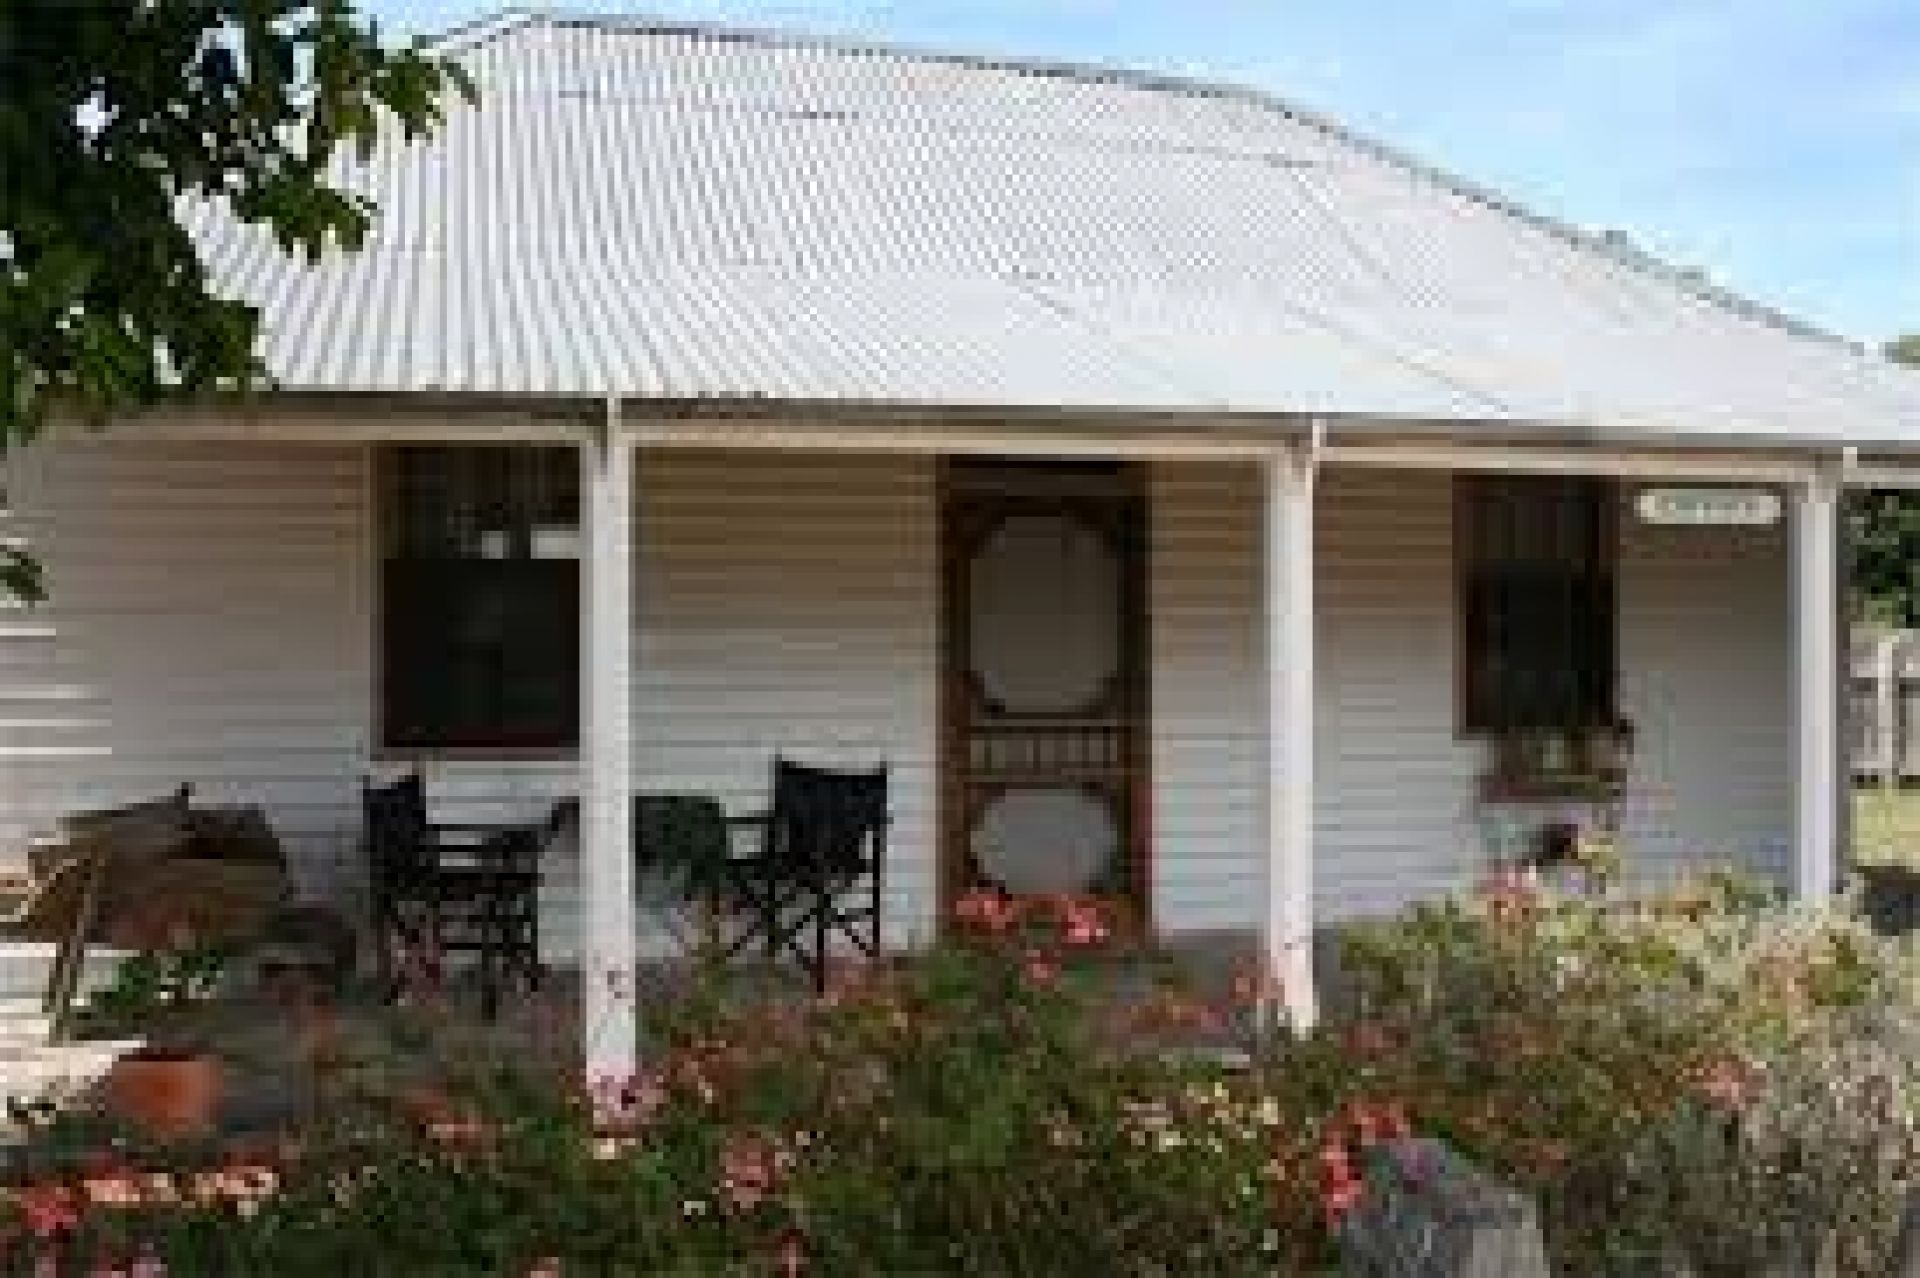 Davidson Cottage